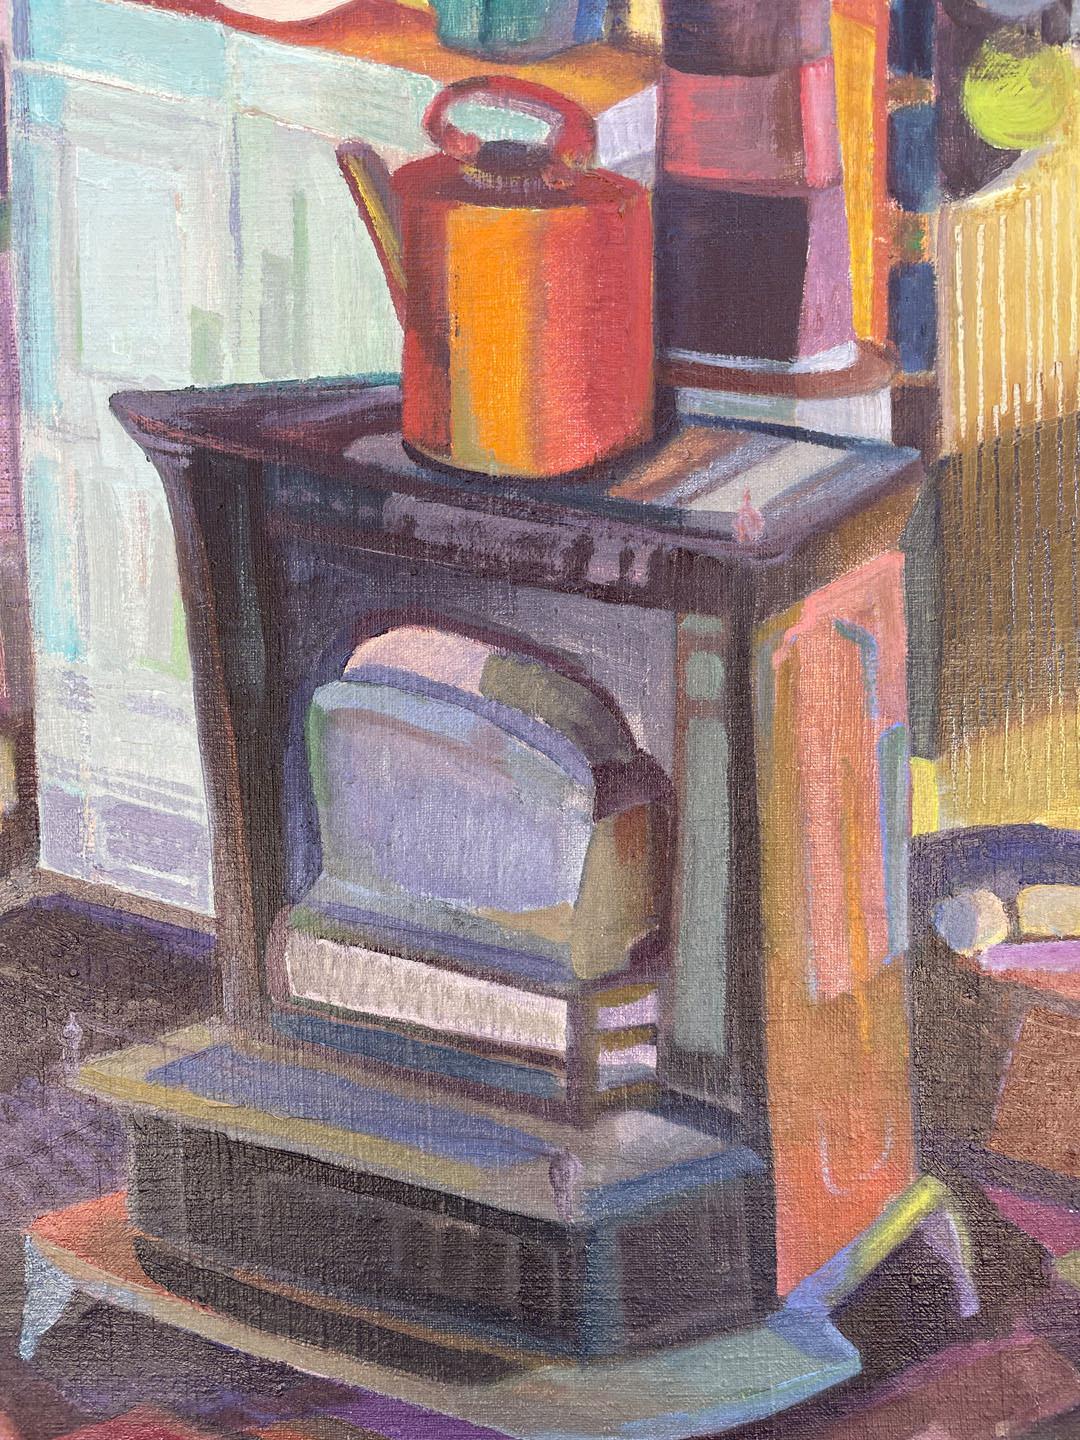 Studio Stove, Buntes kubistisches Ölgemälde, Künstlerin aus der Cleveland School (Kubismus), Painting, von Clara Deike